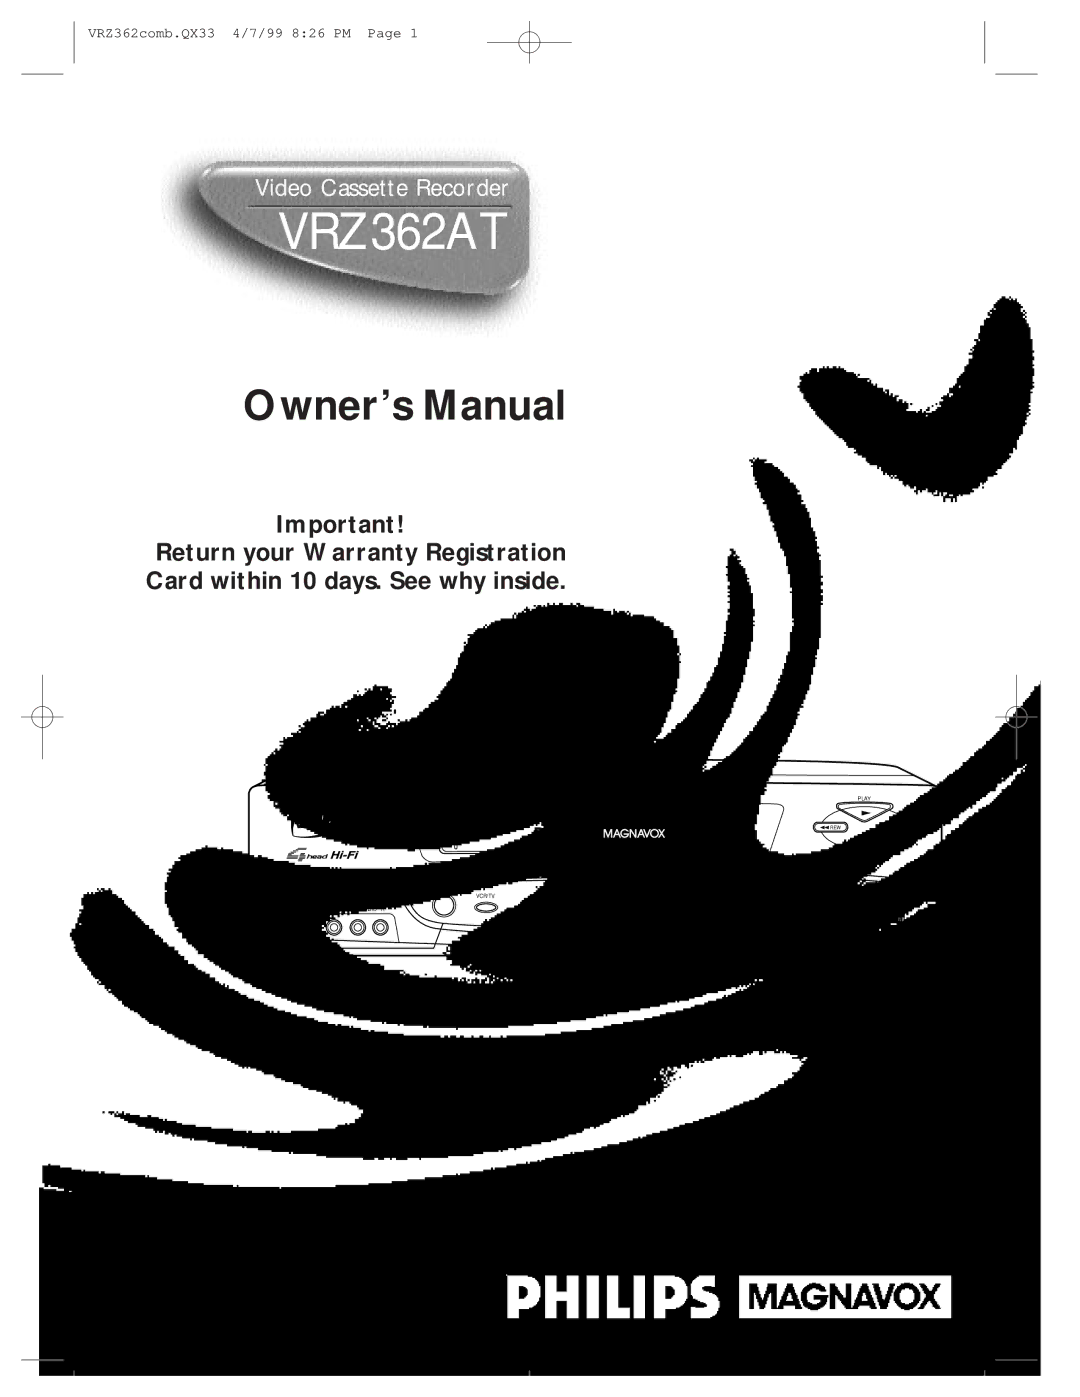 Magnavox VRZ362AT owner manual 